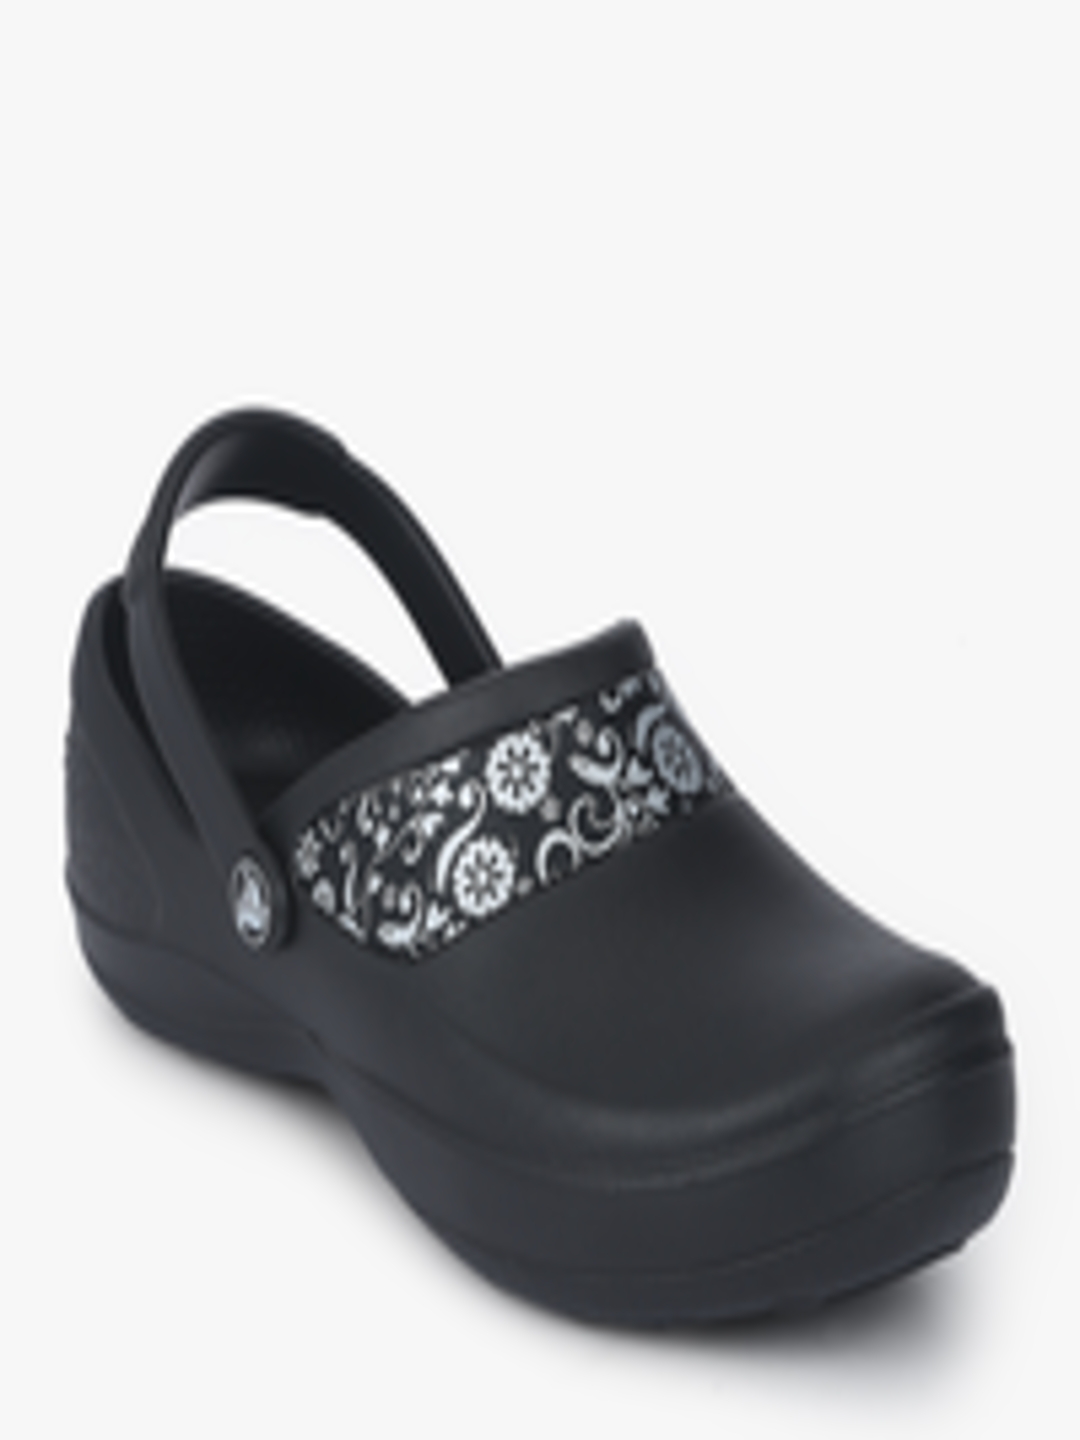 Buy Crocs Women Black Solid Thong Flip Flops - Flip Flops for Women ...